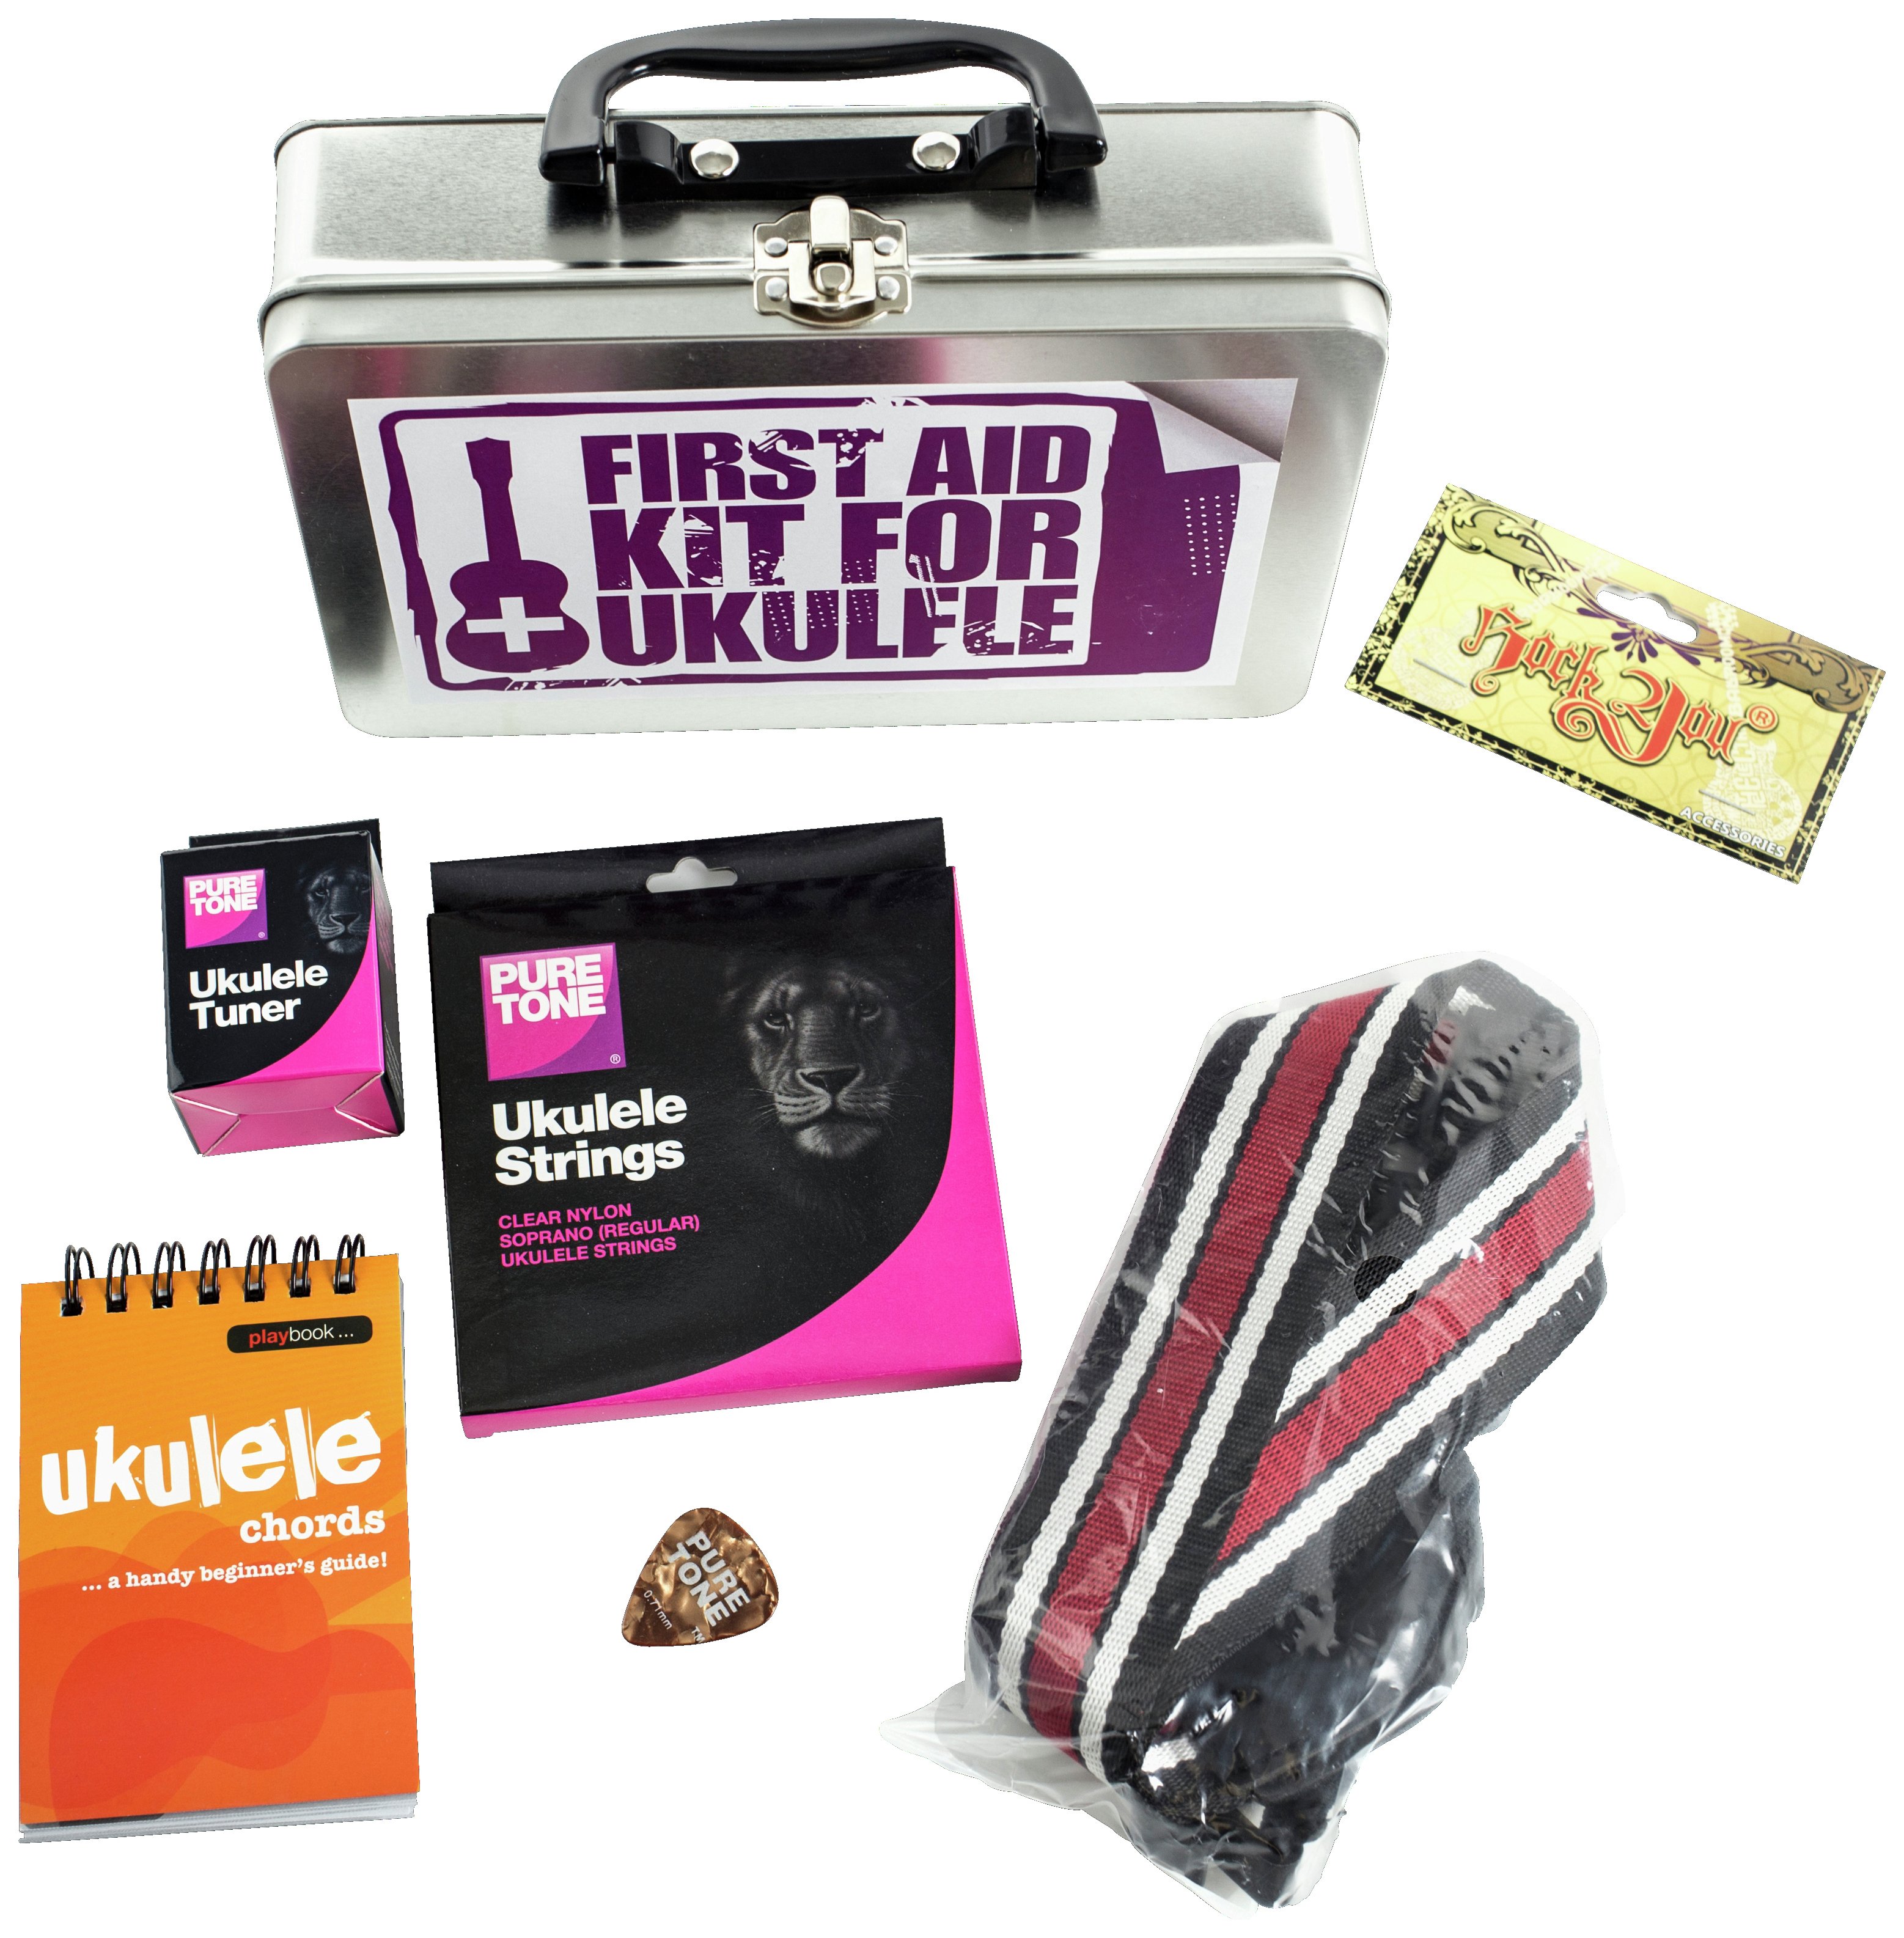 First Aid Kit for Ukulele.